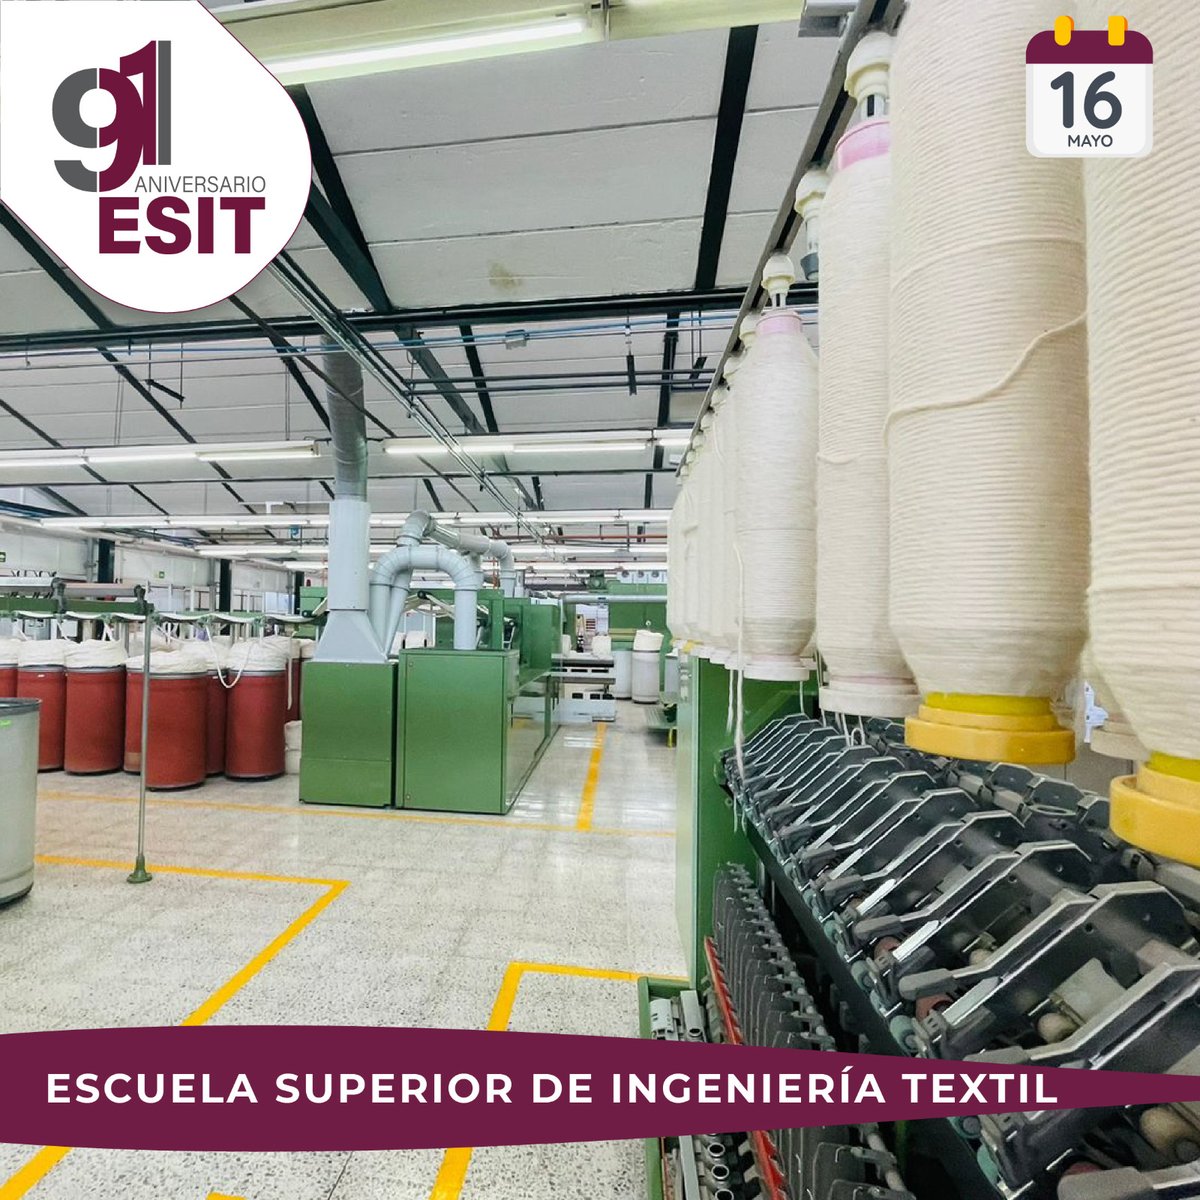 ¡Muchas felicidades a la #ESIT que hoy celebra su 91 aniversario! Escuela líder en la formación de profesionales e investigadores en las áreas de ingeniería textil, especilizados en las tecnologías de acabados, confección, hilados y tejidos !Huélum!